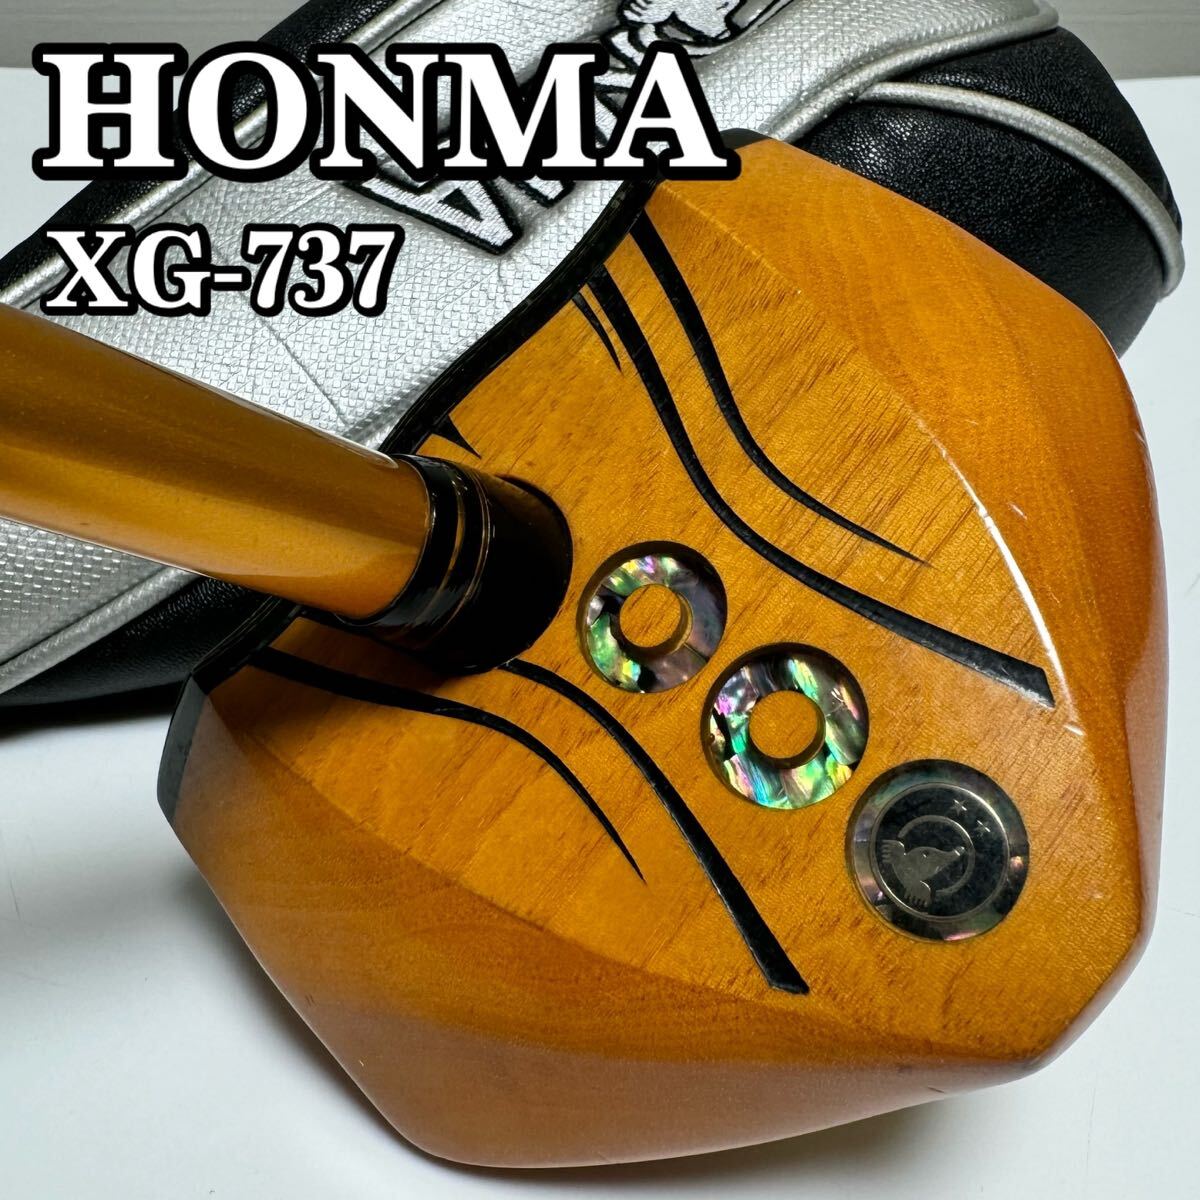 【貴重】HONMA ホンマゴルフ 本間ゴルフ パークゴルフクラブ XG-737 ARMRQ 右利き用 右打ち用 全長85cm ヘッドカバー付属 IPGA認定品_画像1